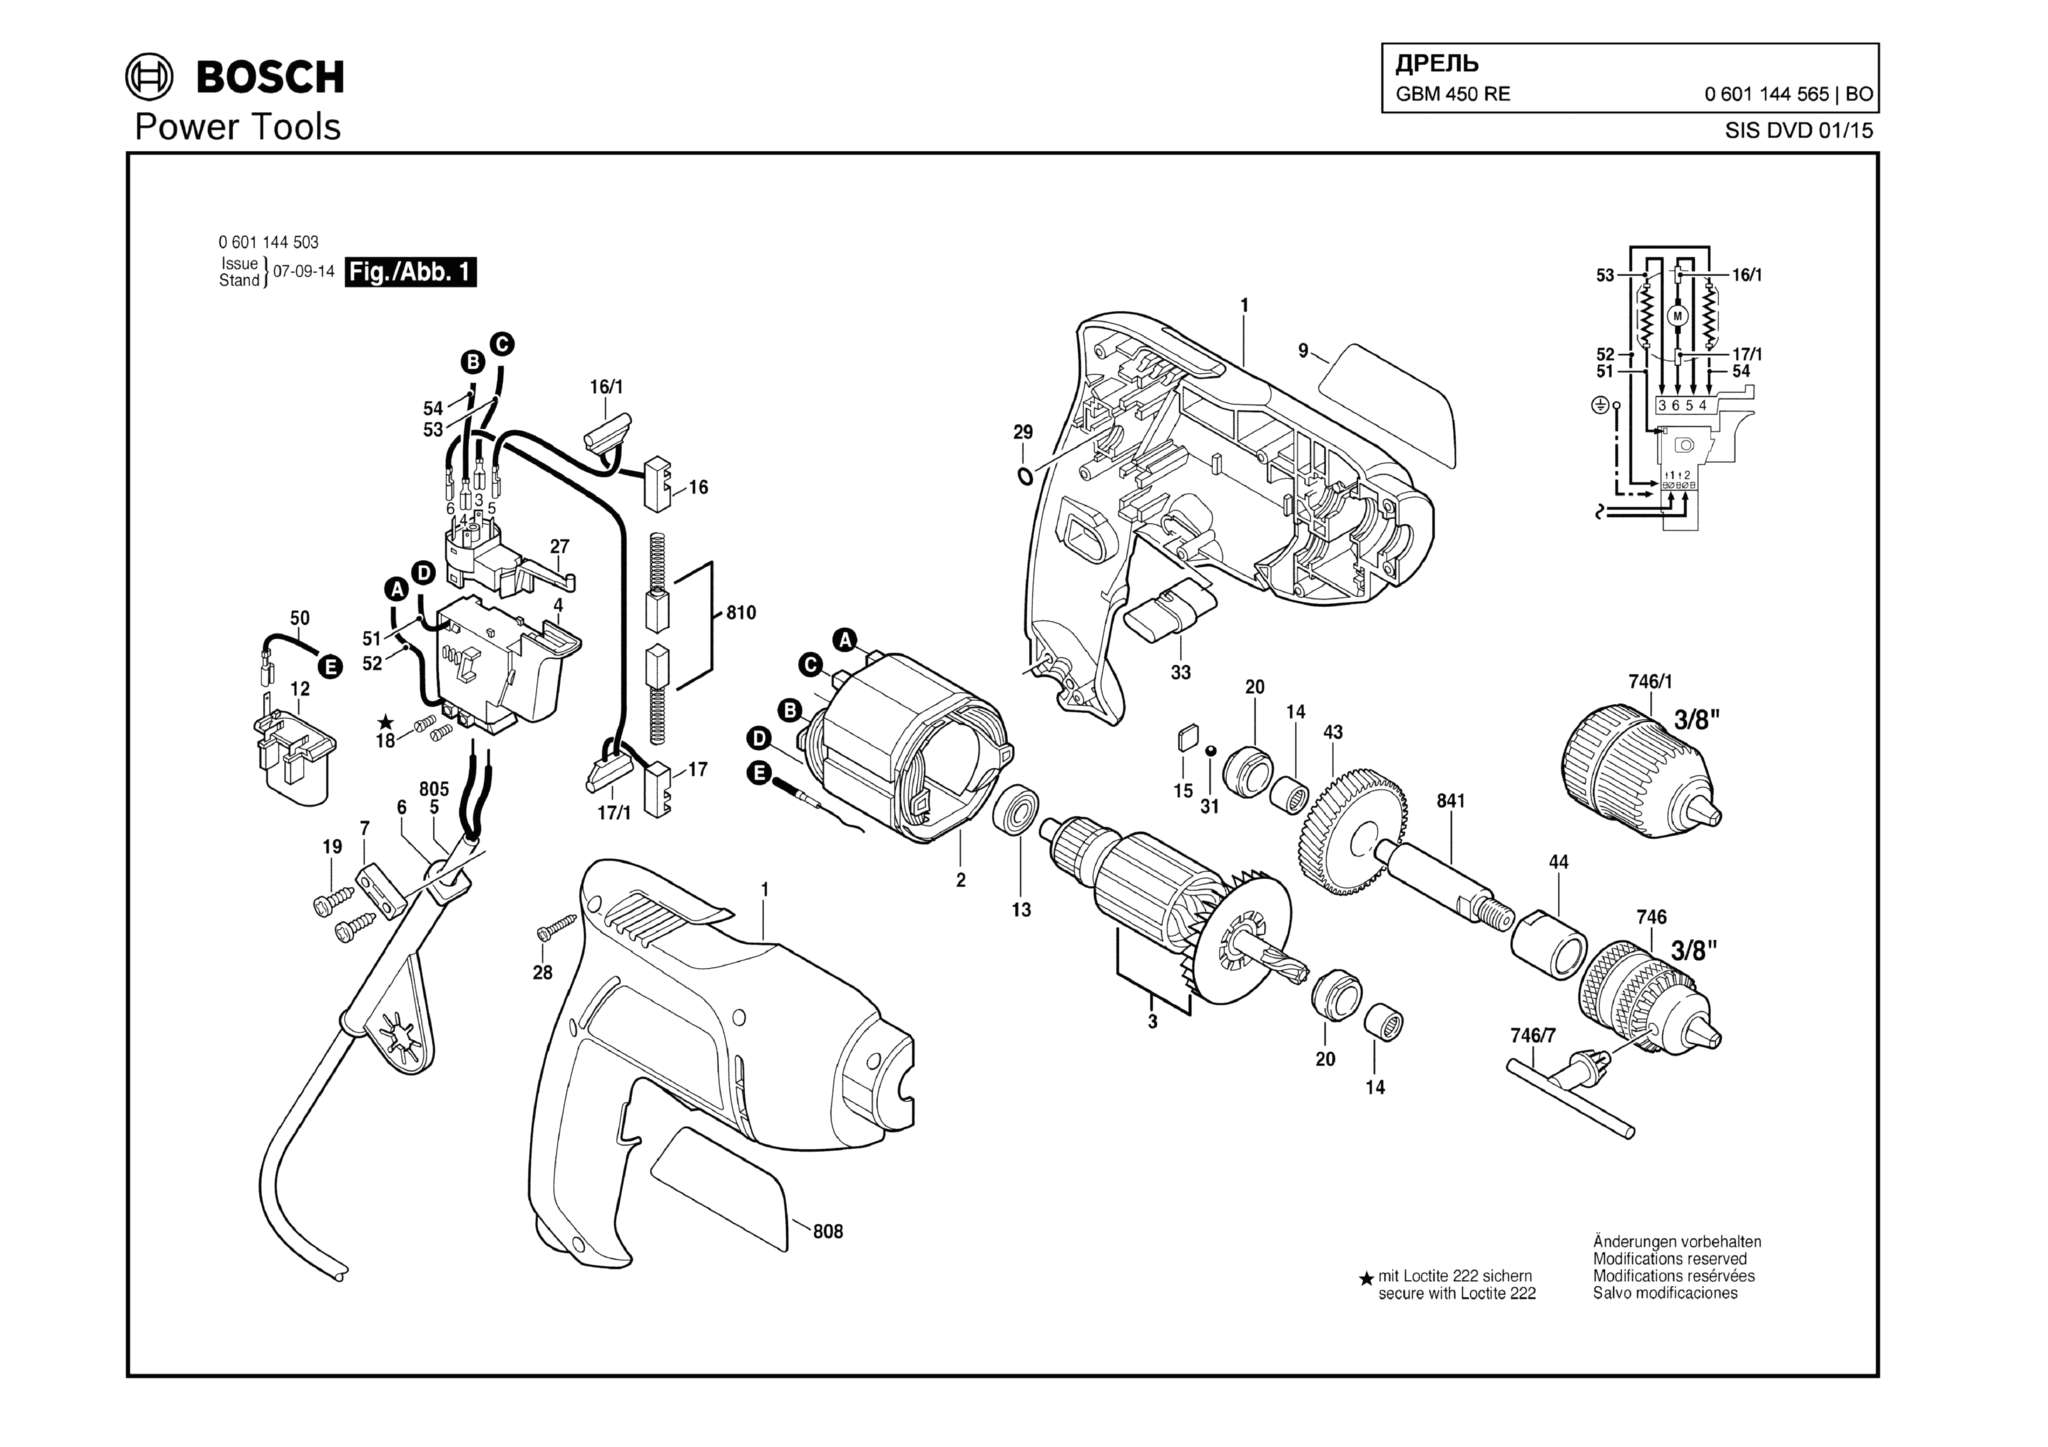 Запчасти, схема и деталировка Bosch GBM 450 RE (ТИП 0601144565)